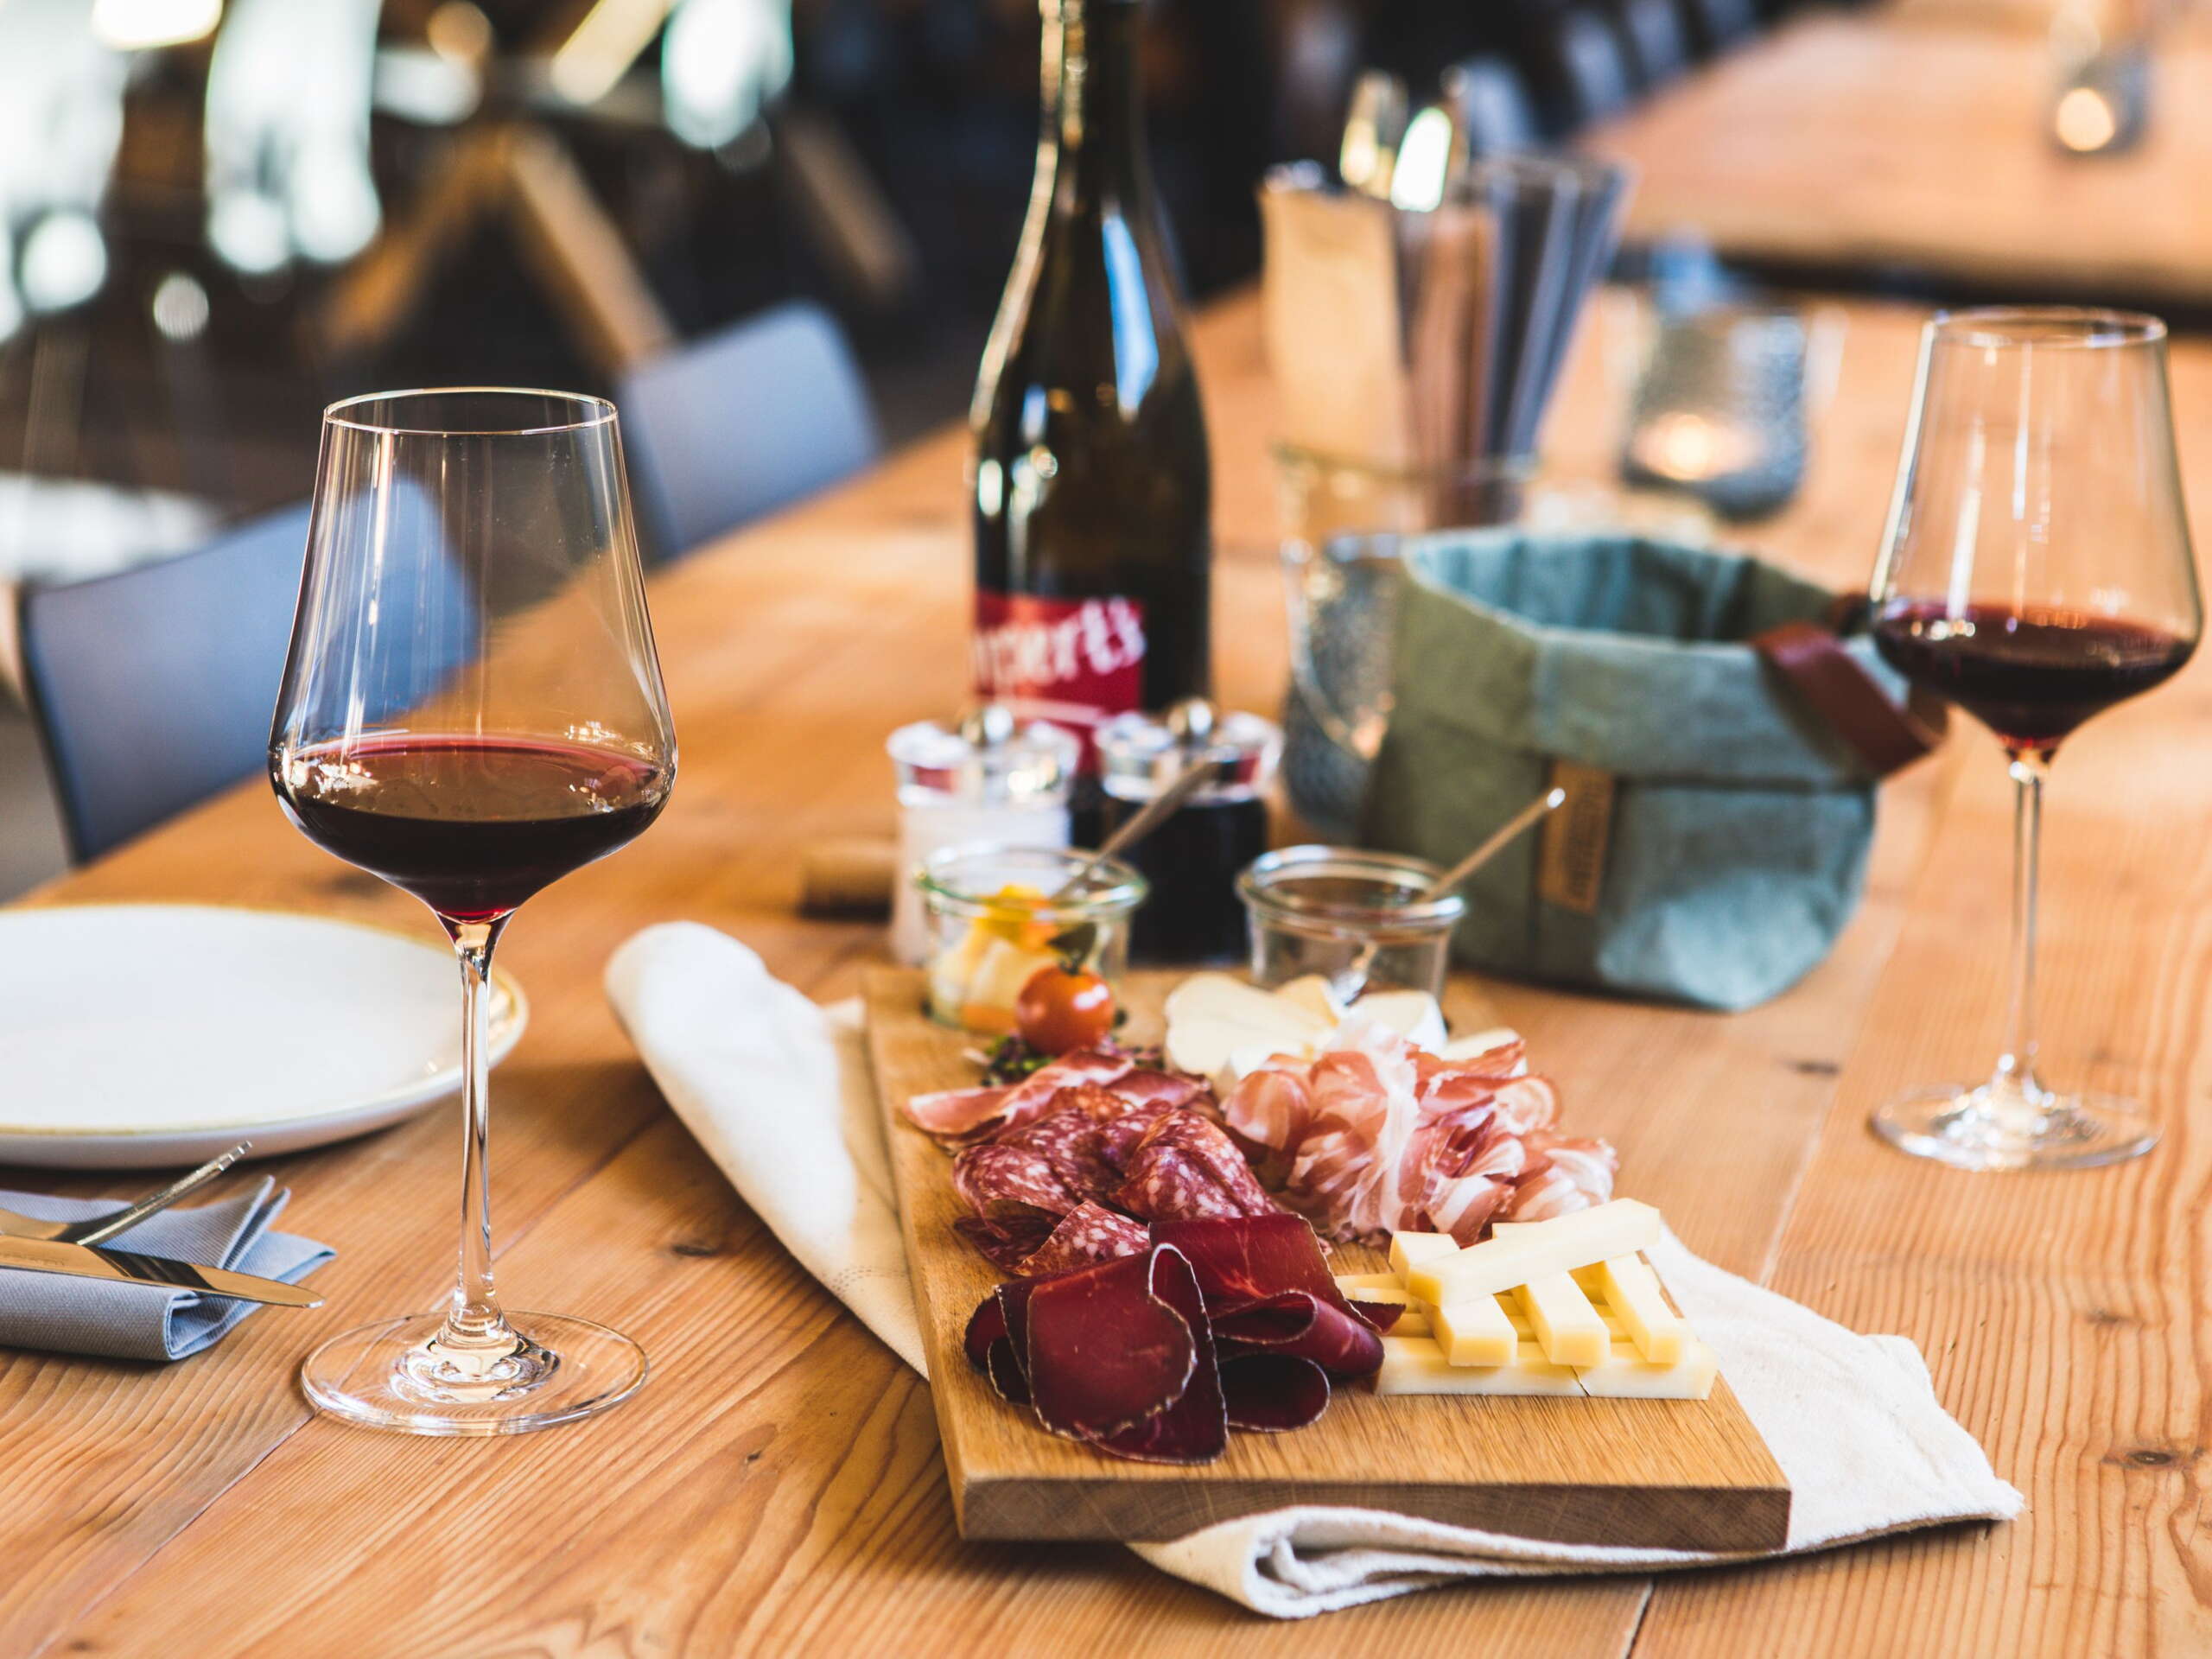 Wein und eine Platte mit Fleisch und Käse auf dem Tisch